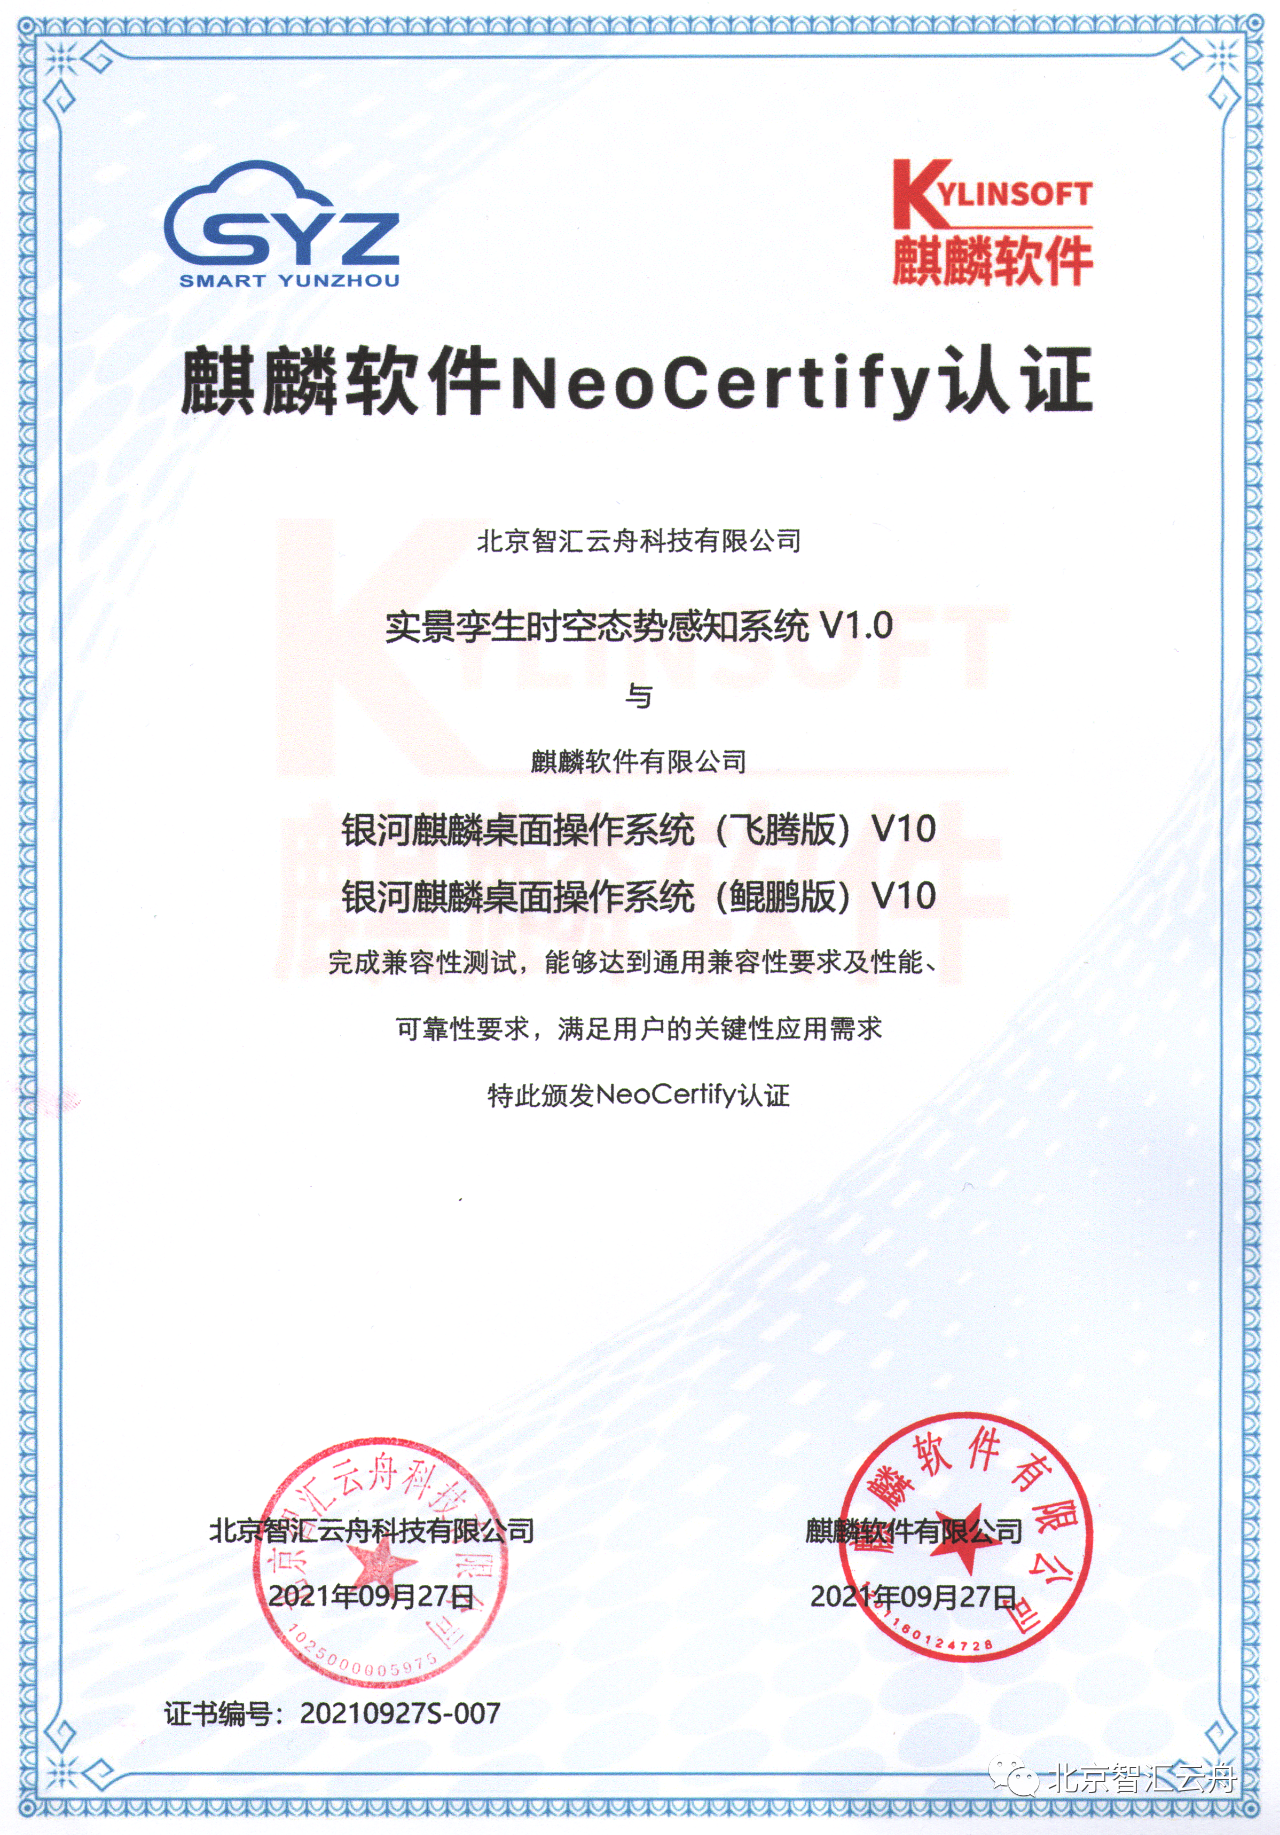 国产自主可控|智汇云舟获得“麒麟软件NeoCertify”认证